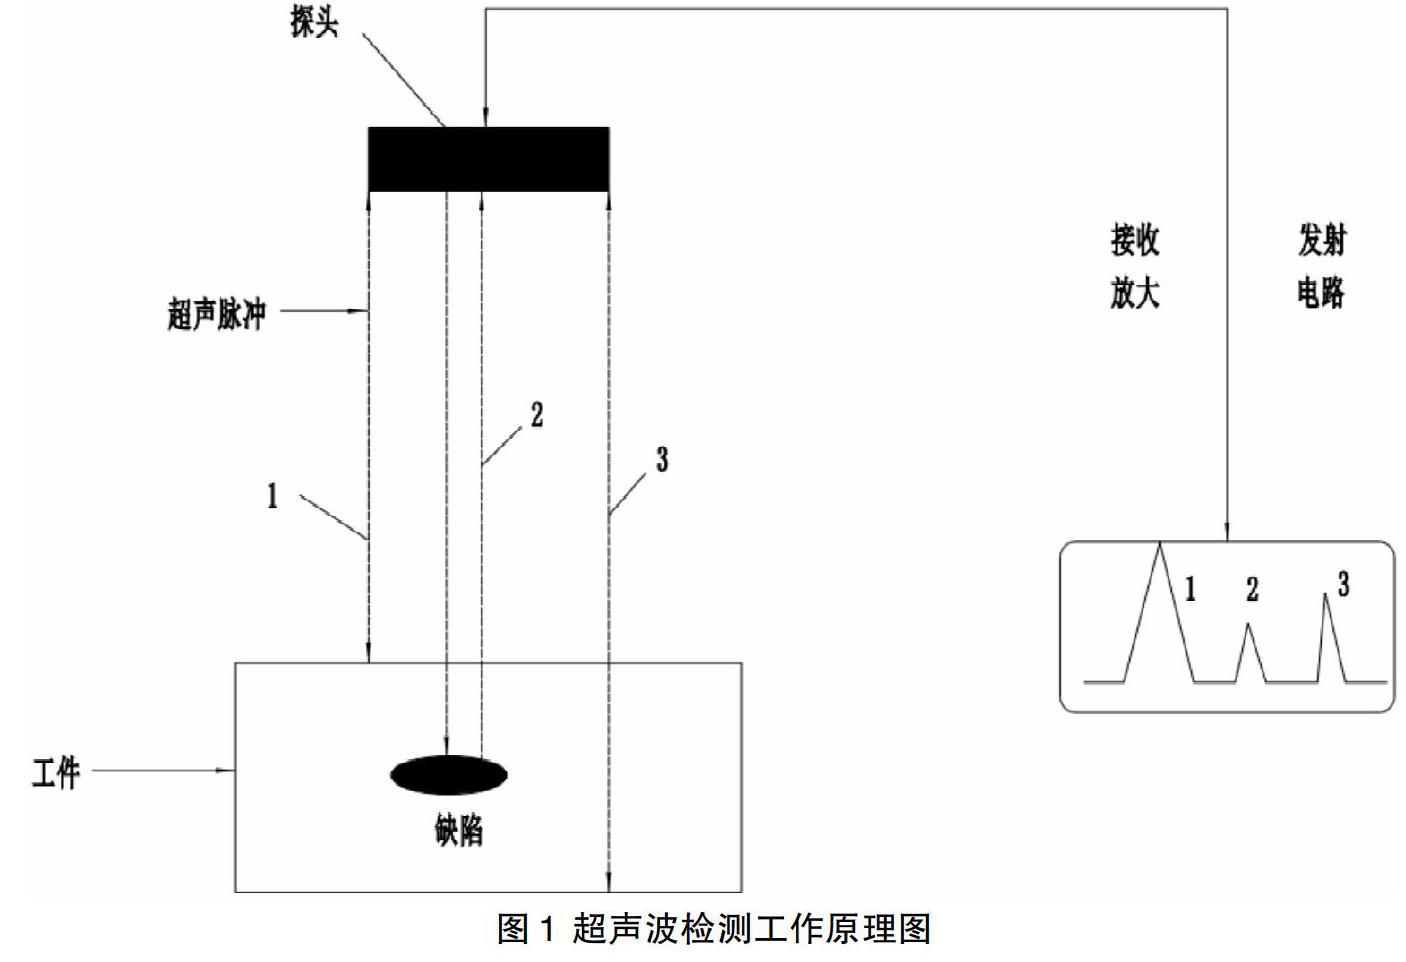 高压放大器在驱动压电陶瓷进行铝板无损检测中的应用研究